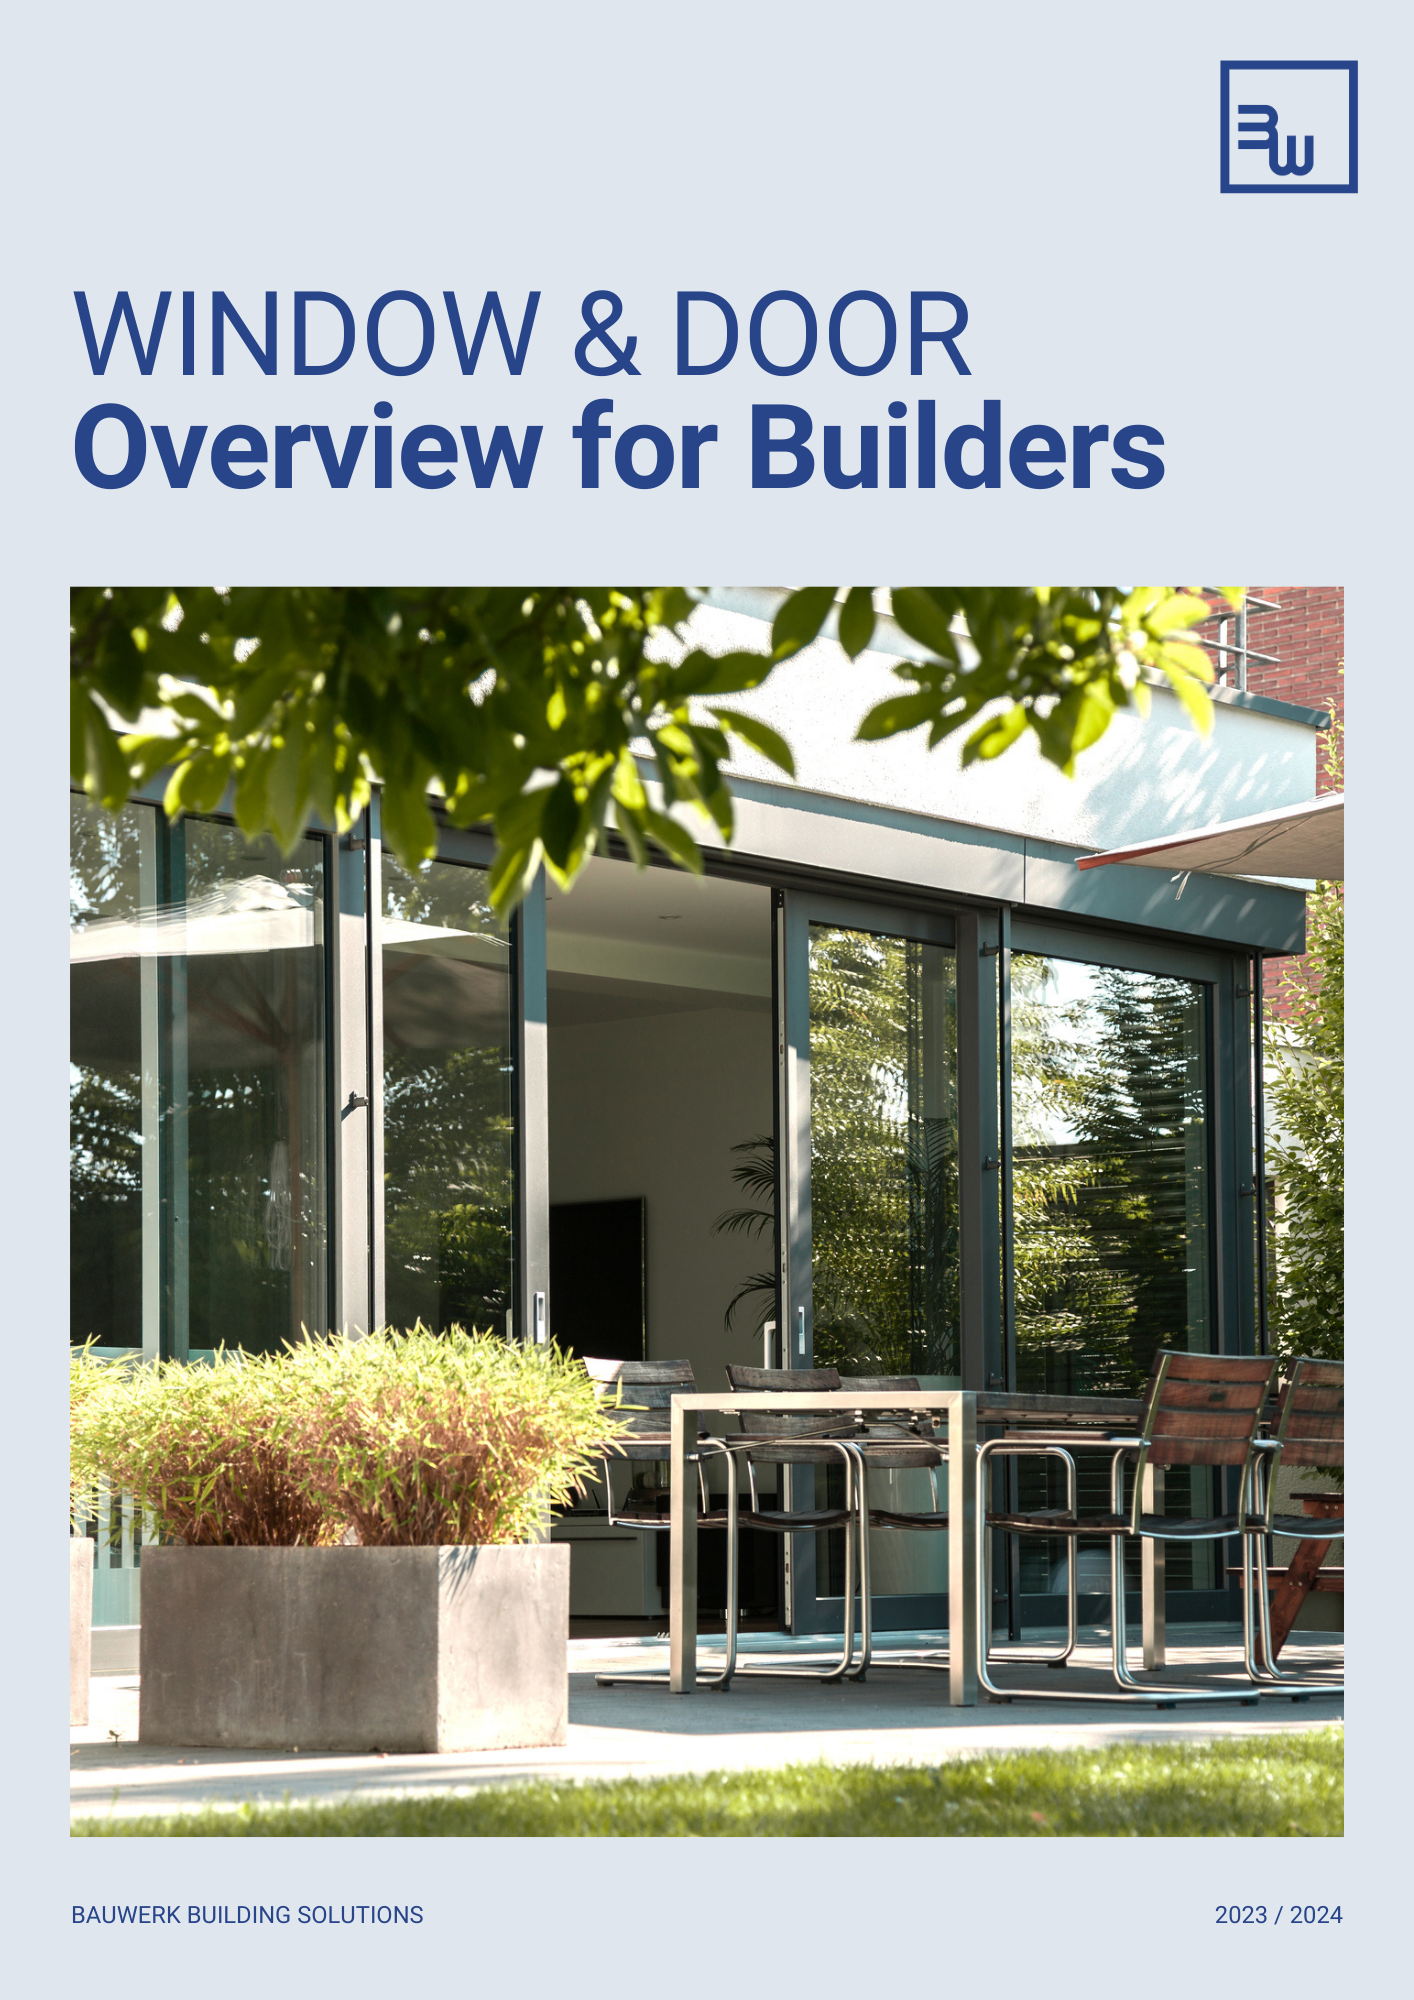 Bauwerk Window & Door Brochure - Builder